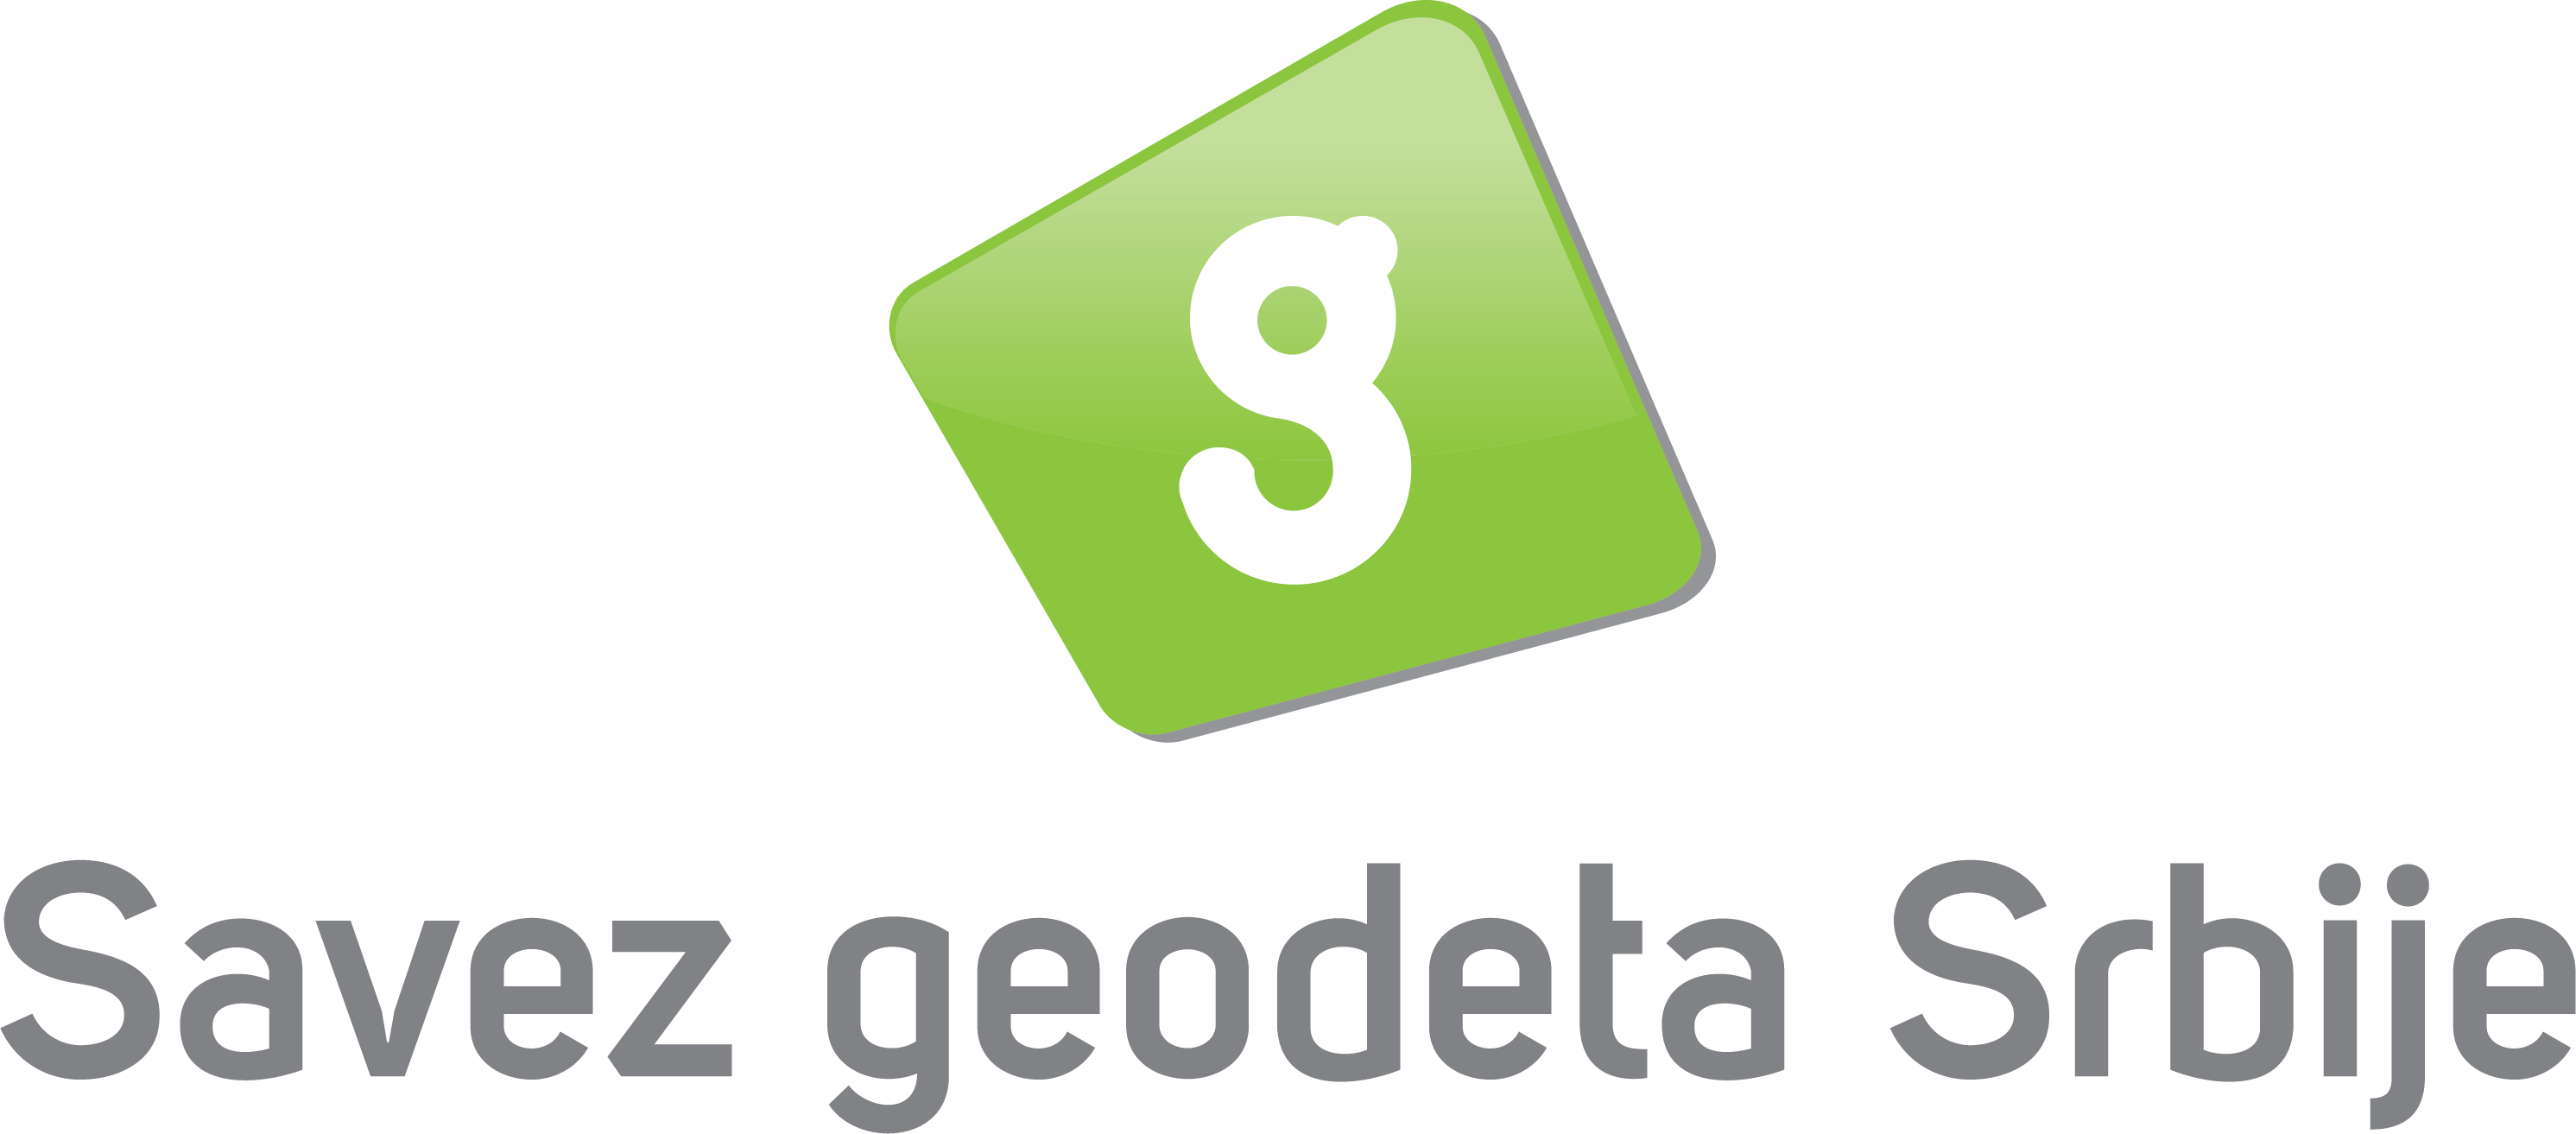 Savez Geodeta Srbije Logo